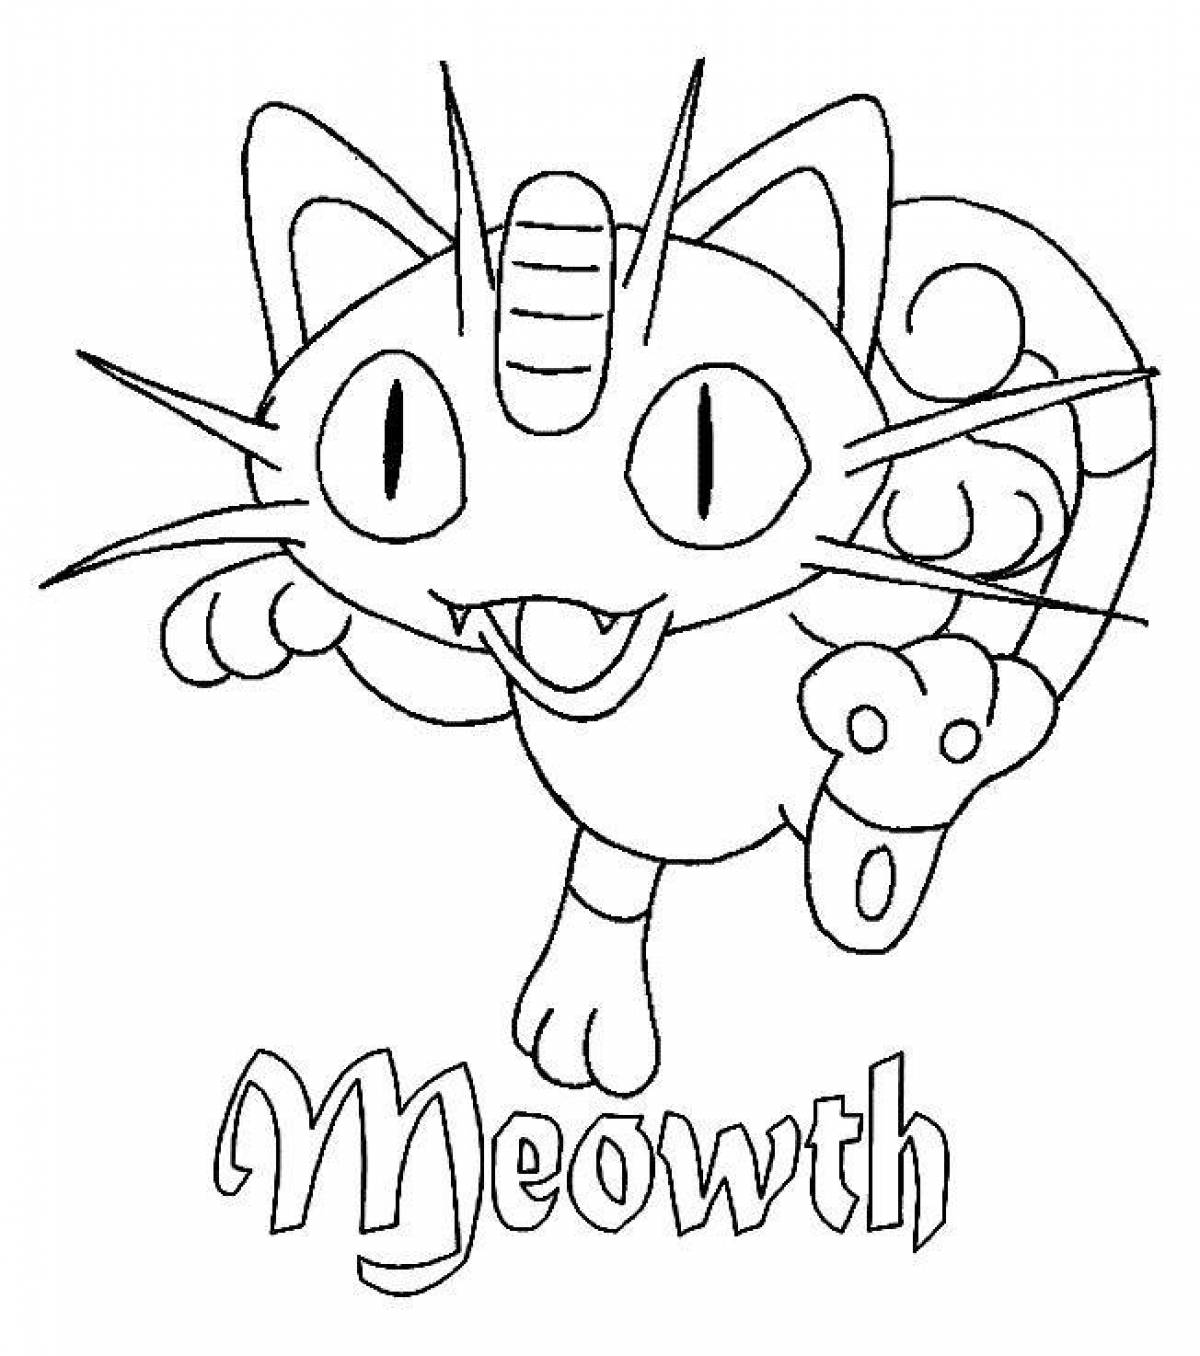 Coloring mischievous meowth